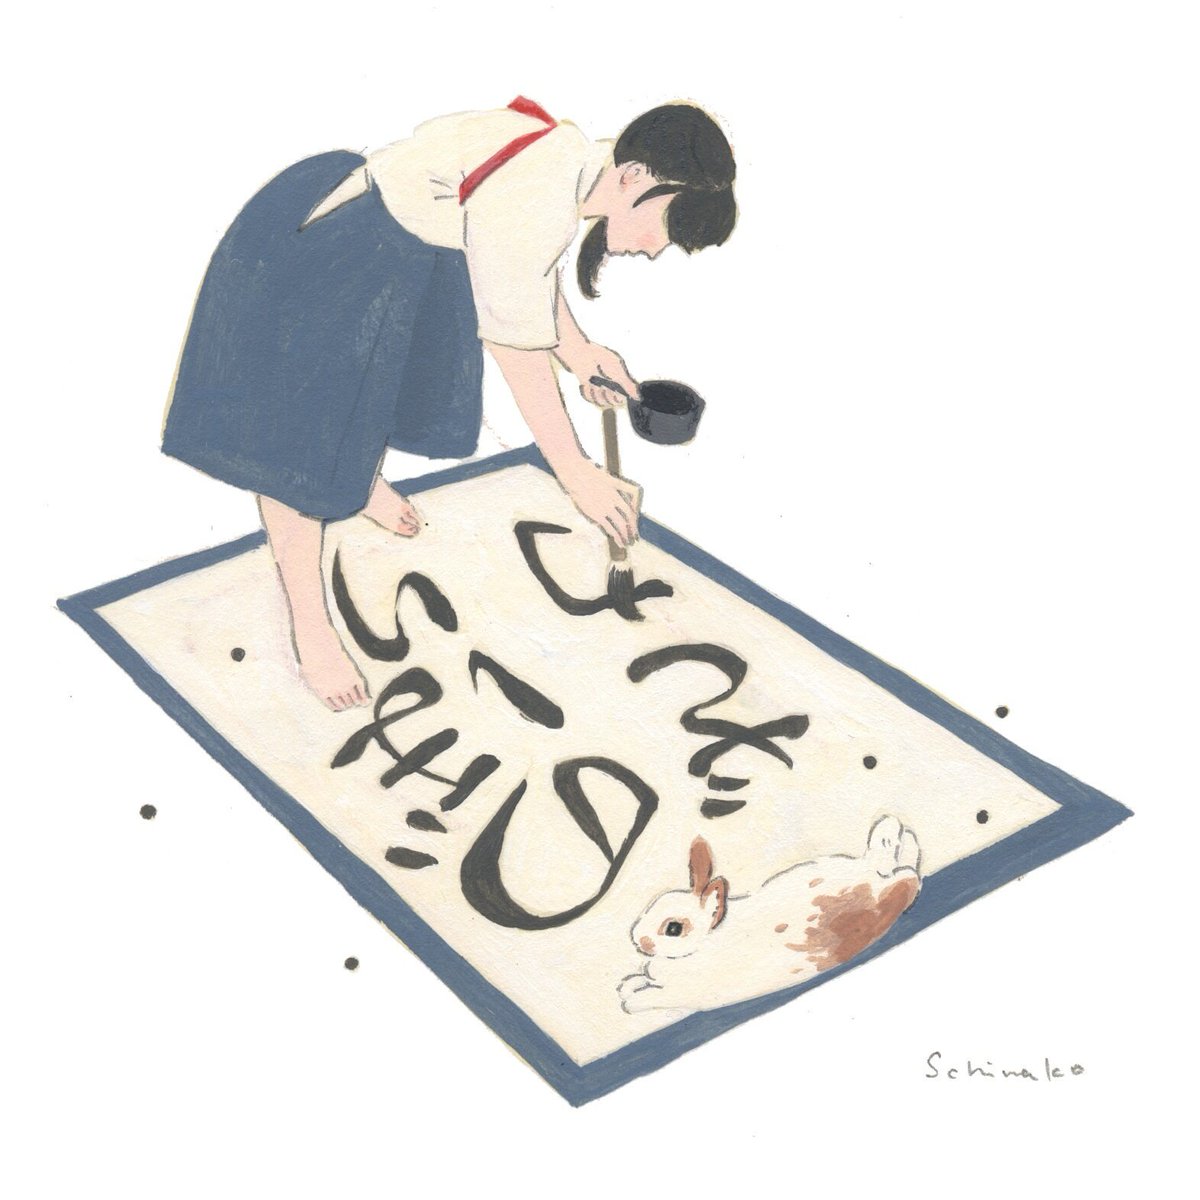 Schinako Moriyama Illustrator 文鎮として書道部の補佐をするうさぎさん 好きな諺は うさぎの登り坂 です イラスト うさぎ